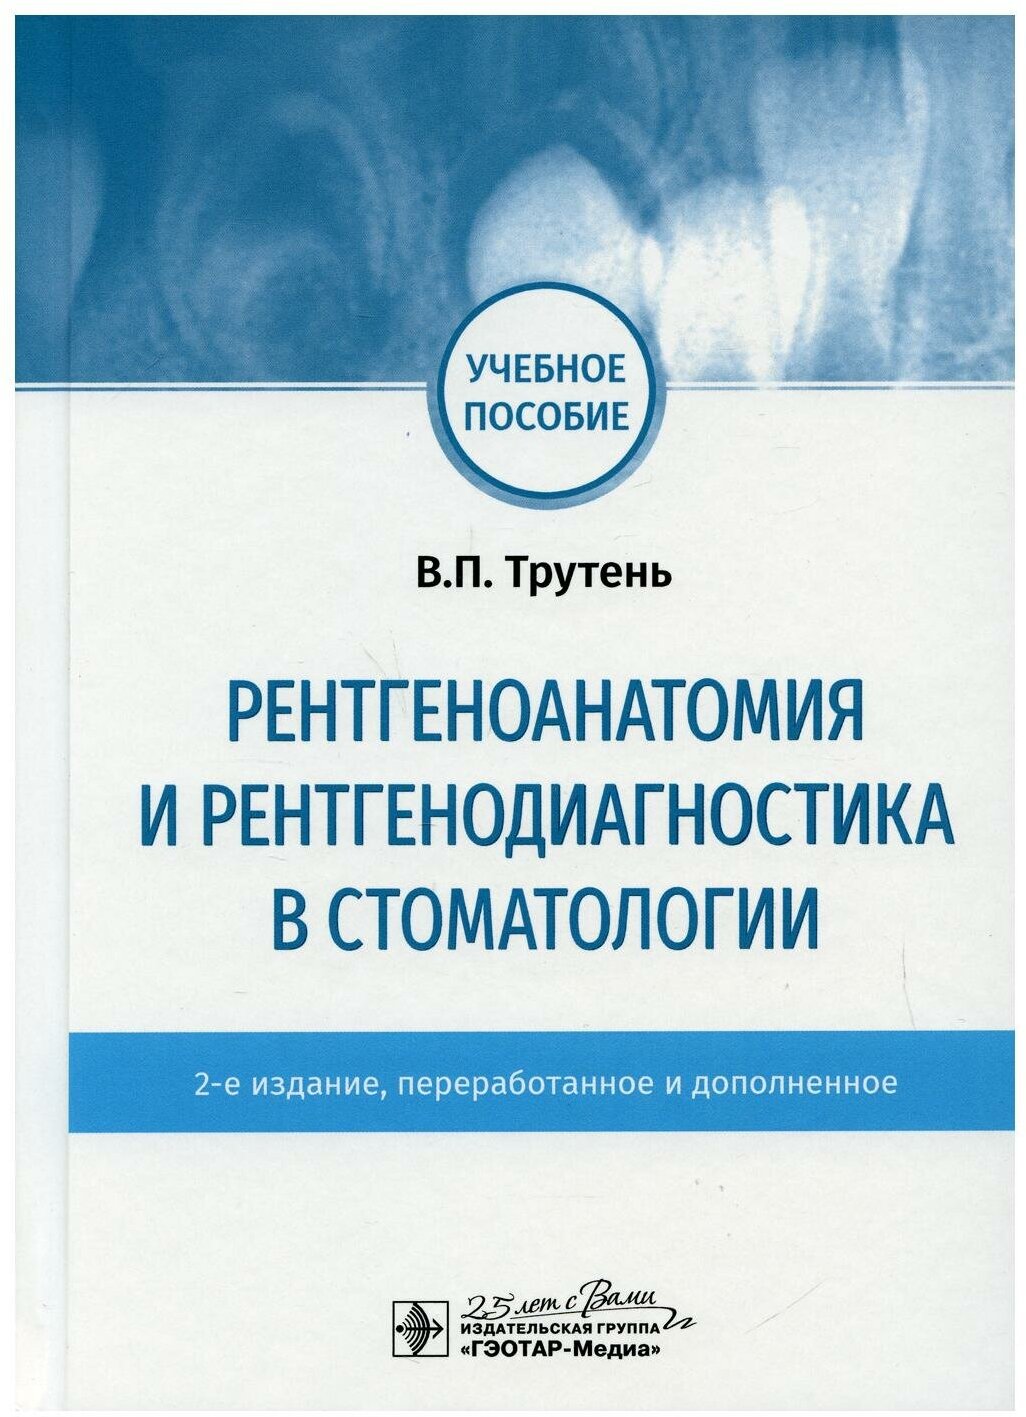 Рентгеноанатомия и рентгенодиагностика в стоматологии: учебное пособие. 2-е изд, перераб. и доп